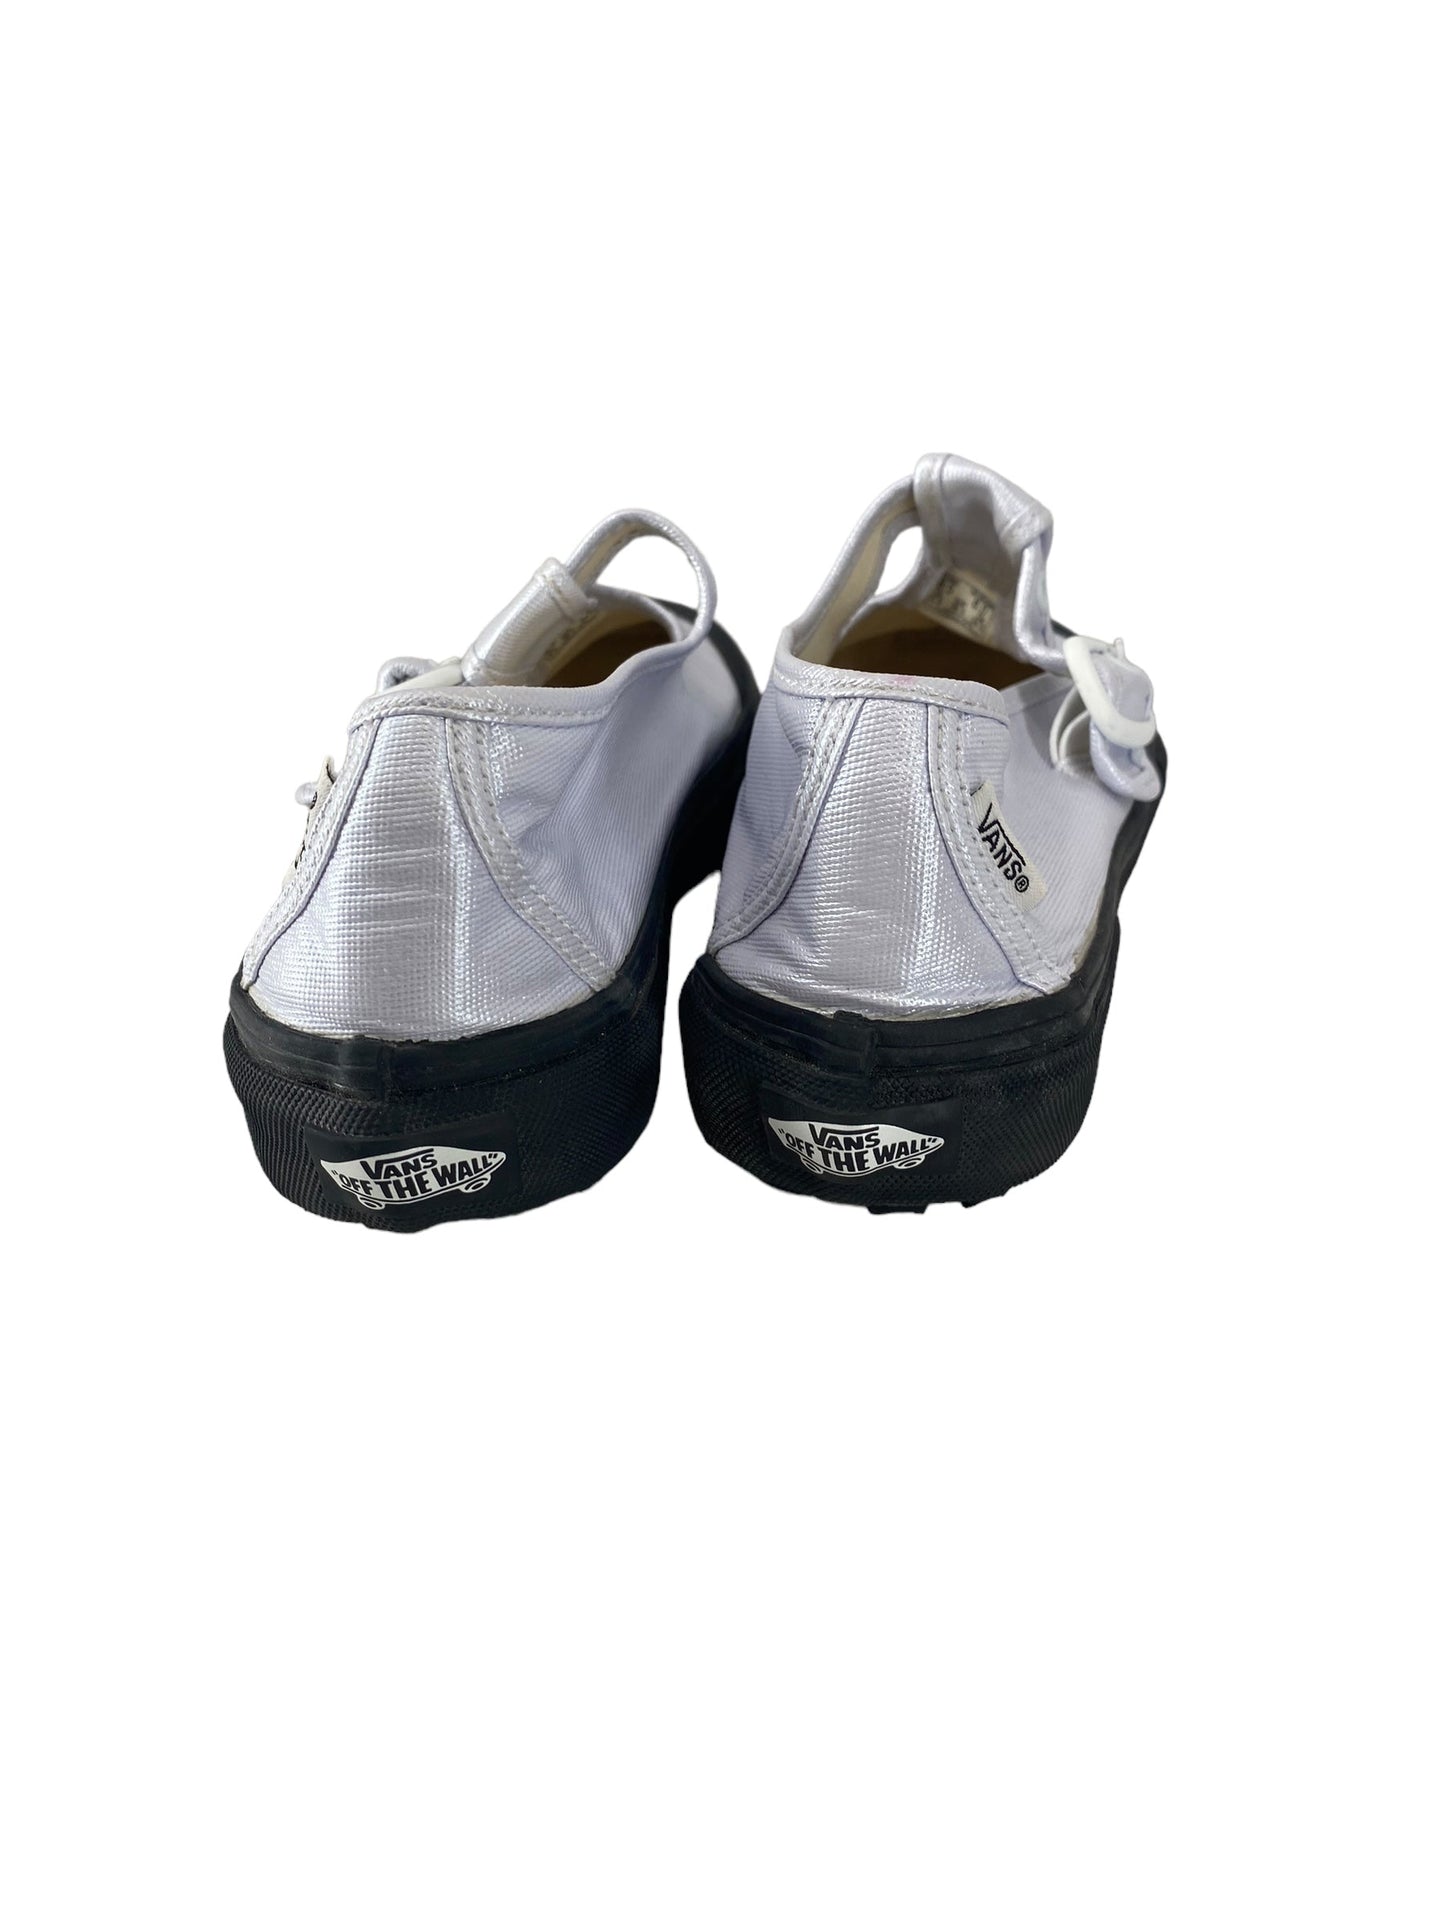 Black & Silver Shoes Heels Platform Vans, Size 8